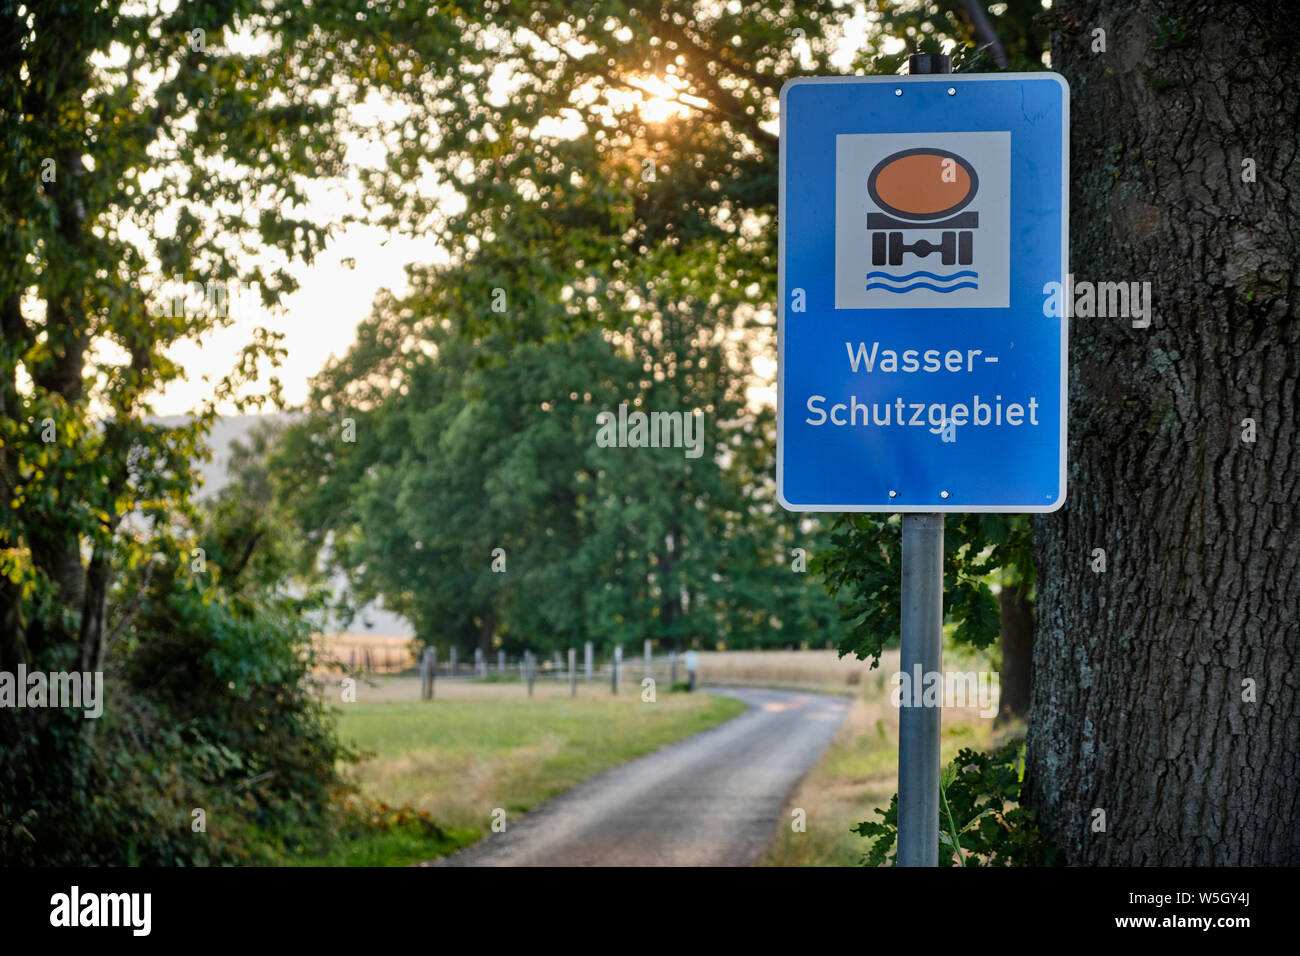 Bad Orb Germania - Luglio 17, 2019: un segno blu in un paesaggio di campagna con bellissimi alberi e una strada dicendo che si tratta di un 'Wasserschutzgebiet' Foto Stock